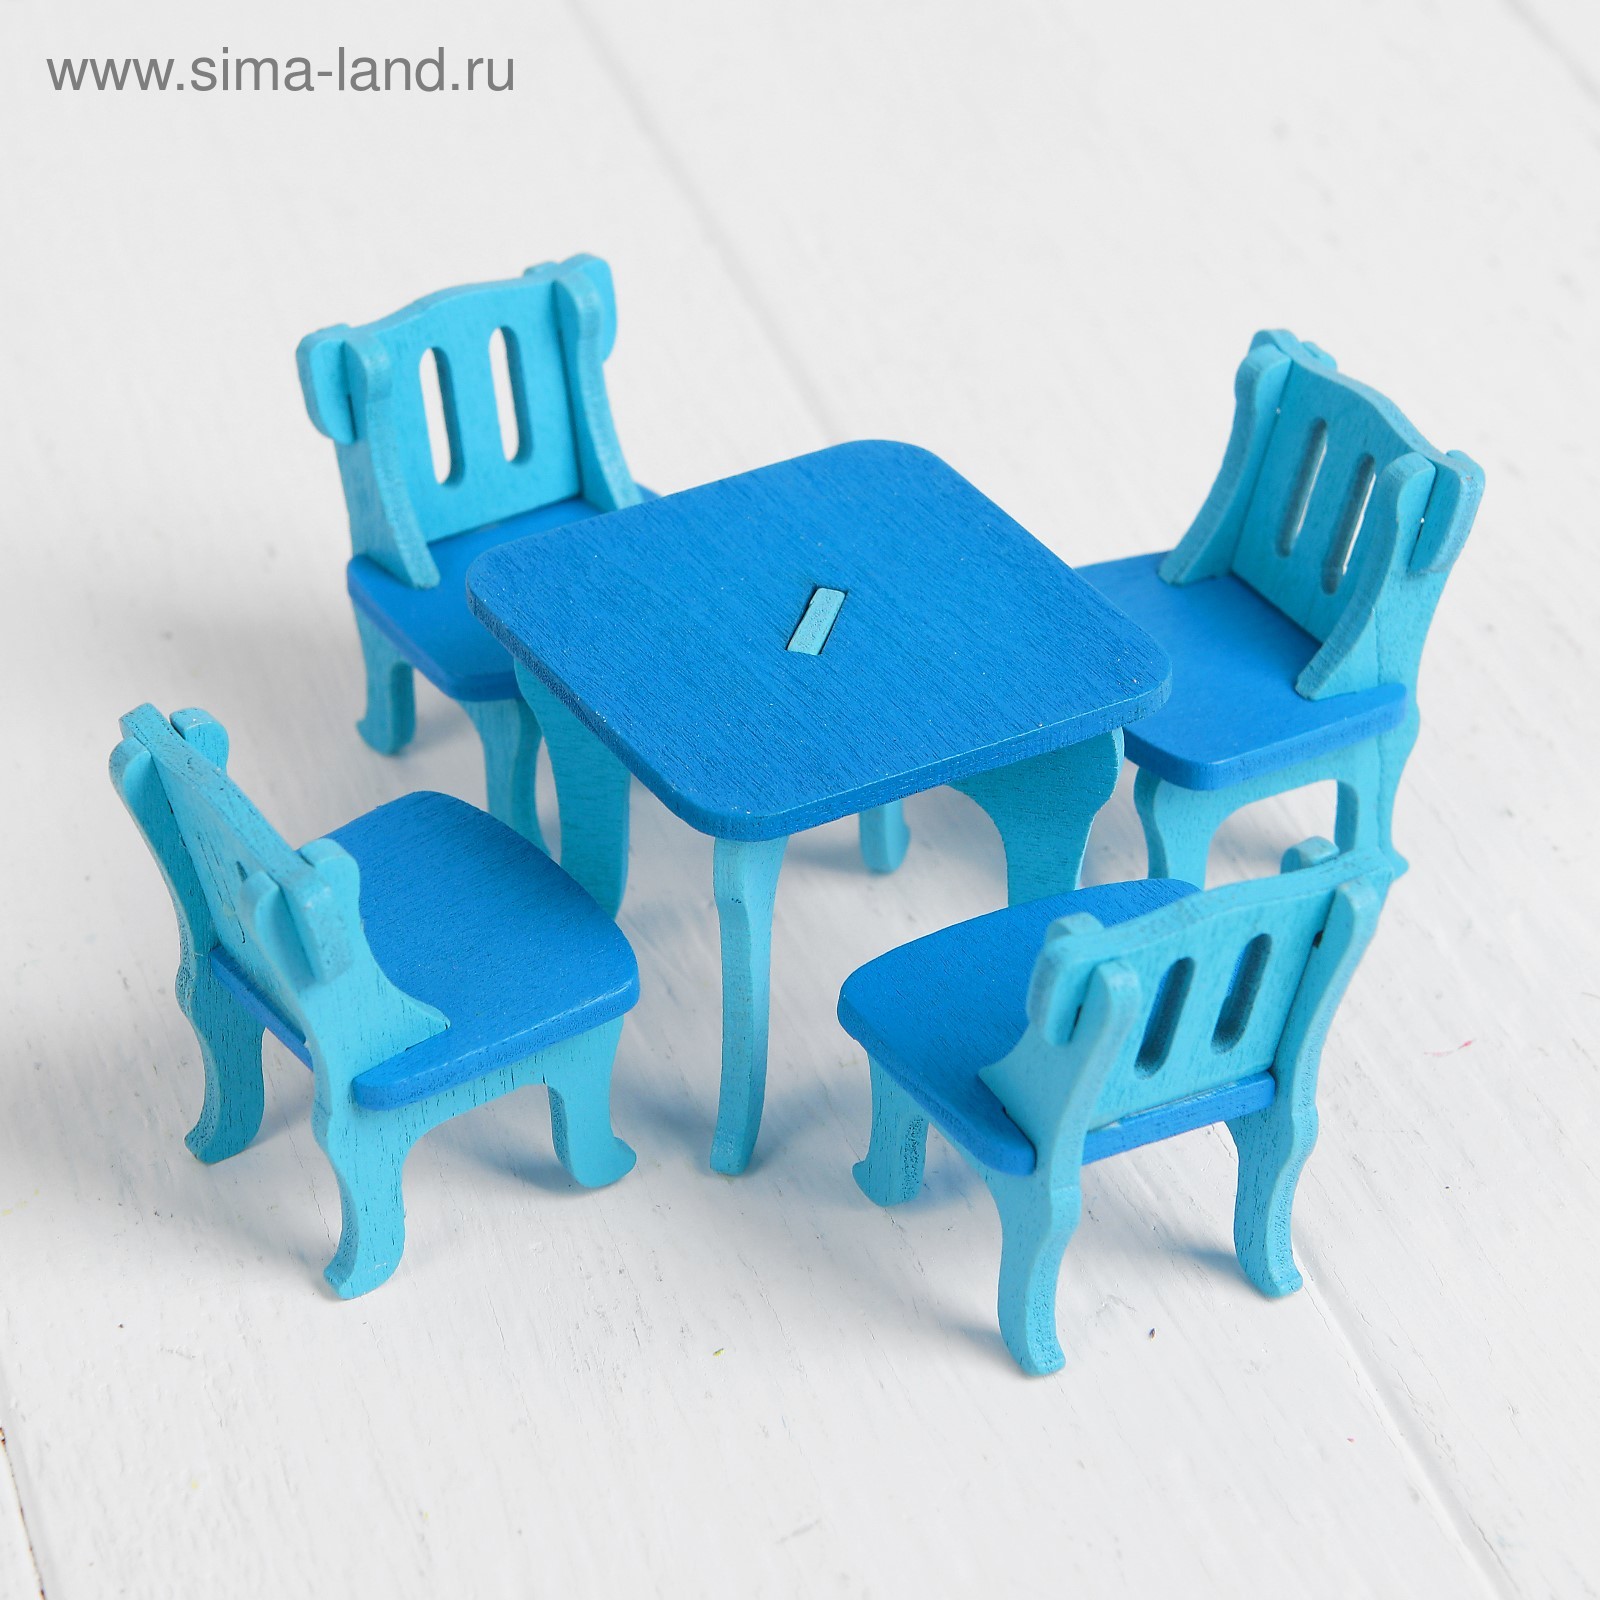 Кукольная мебель голубая